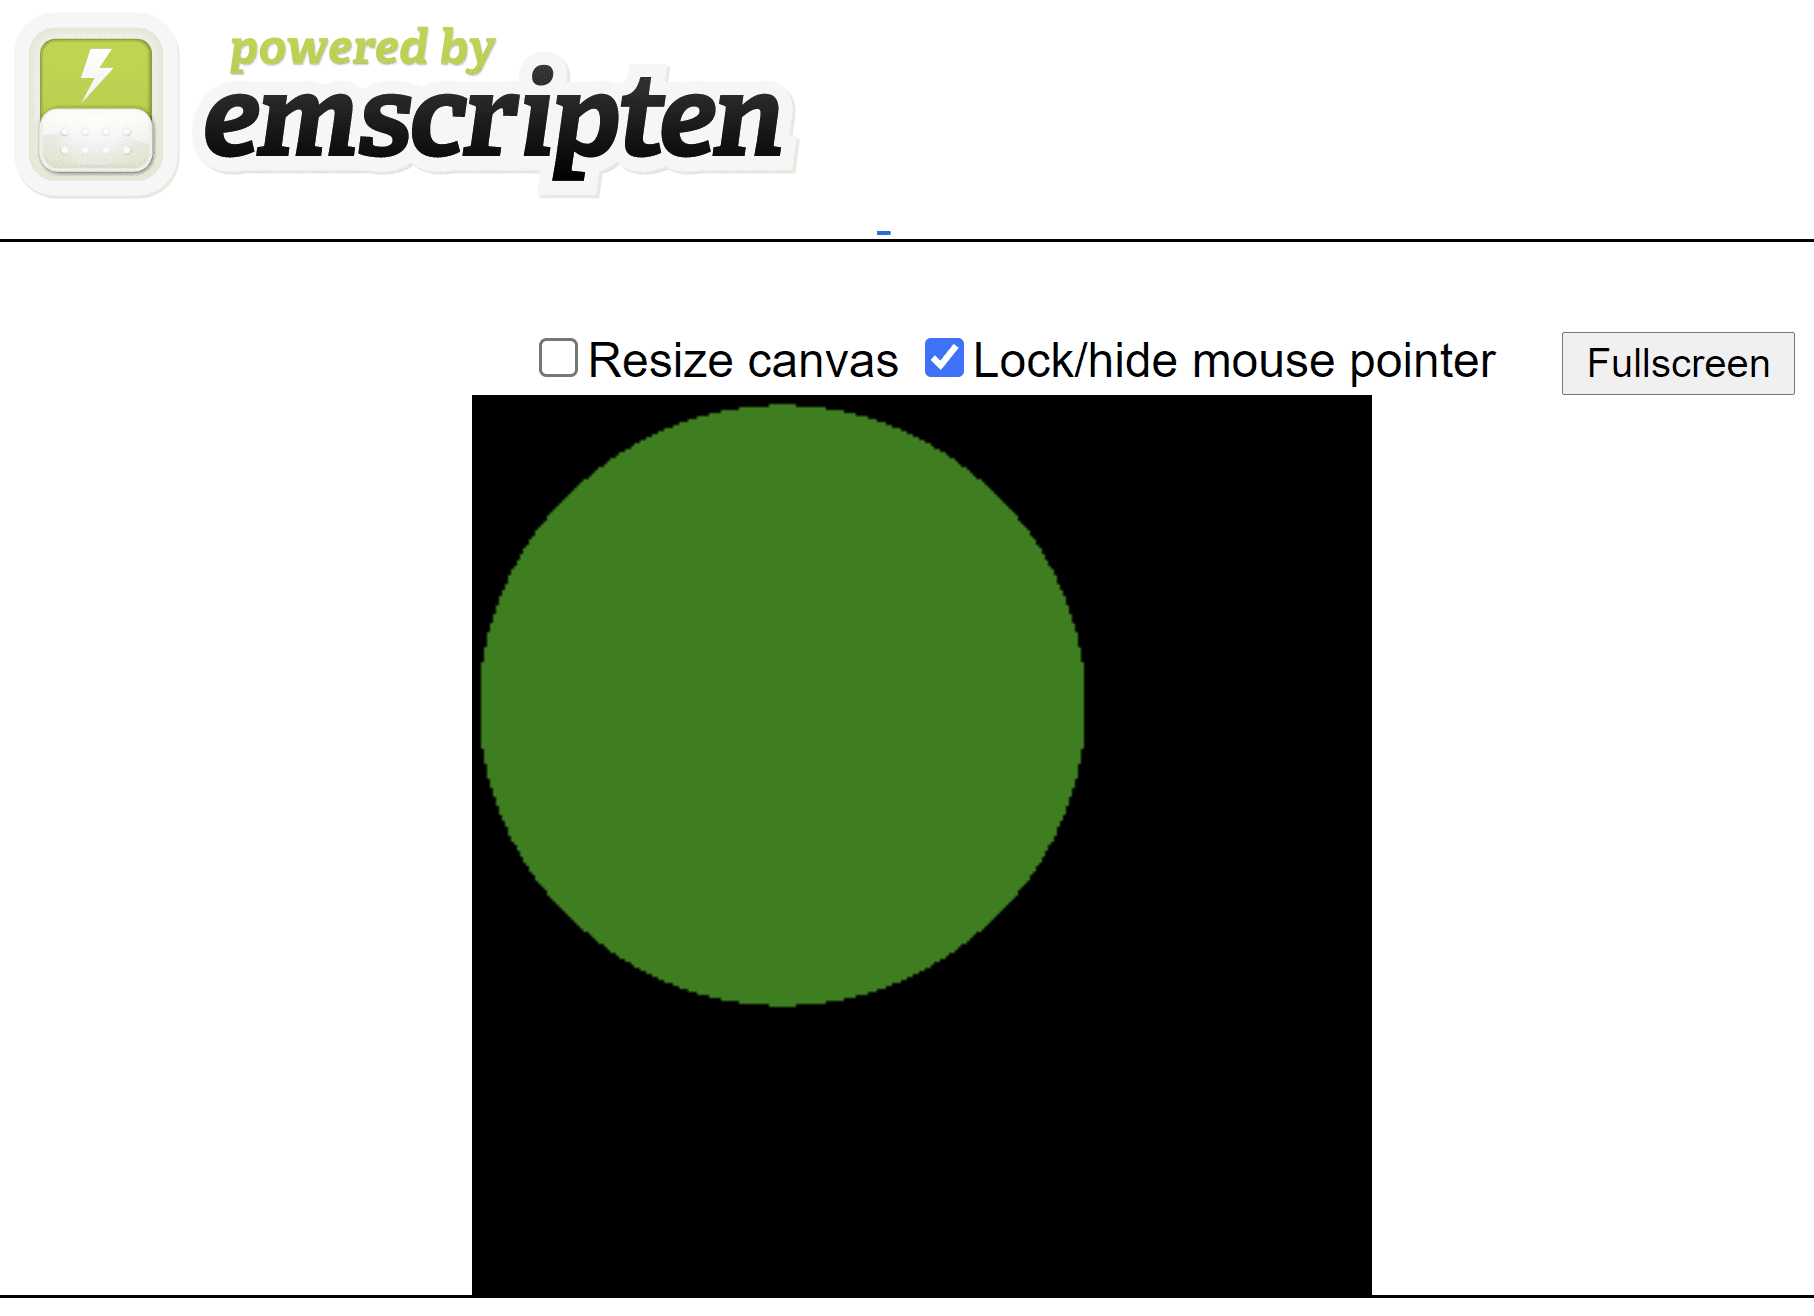 Página HTML gerada em script mostrando um círculo verde sobre uma tela quadrada preta.